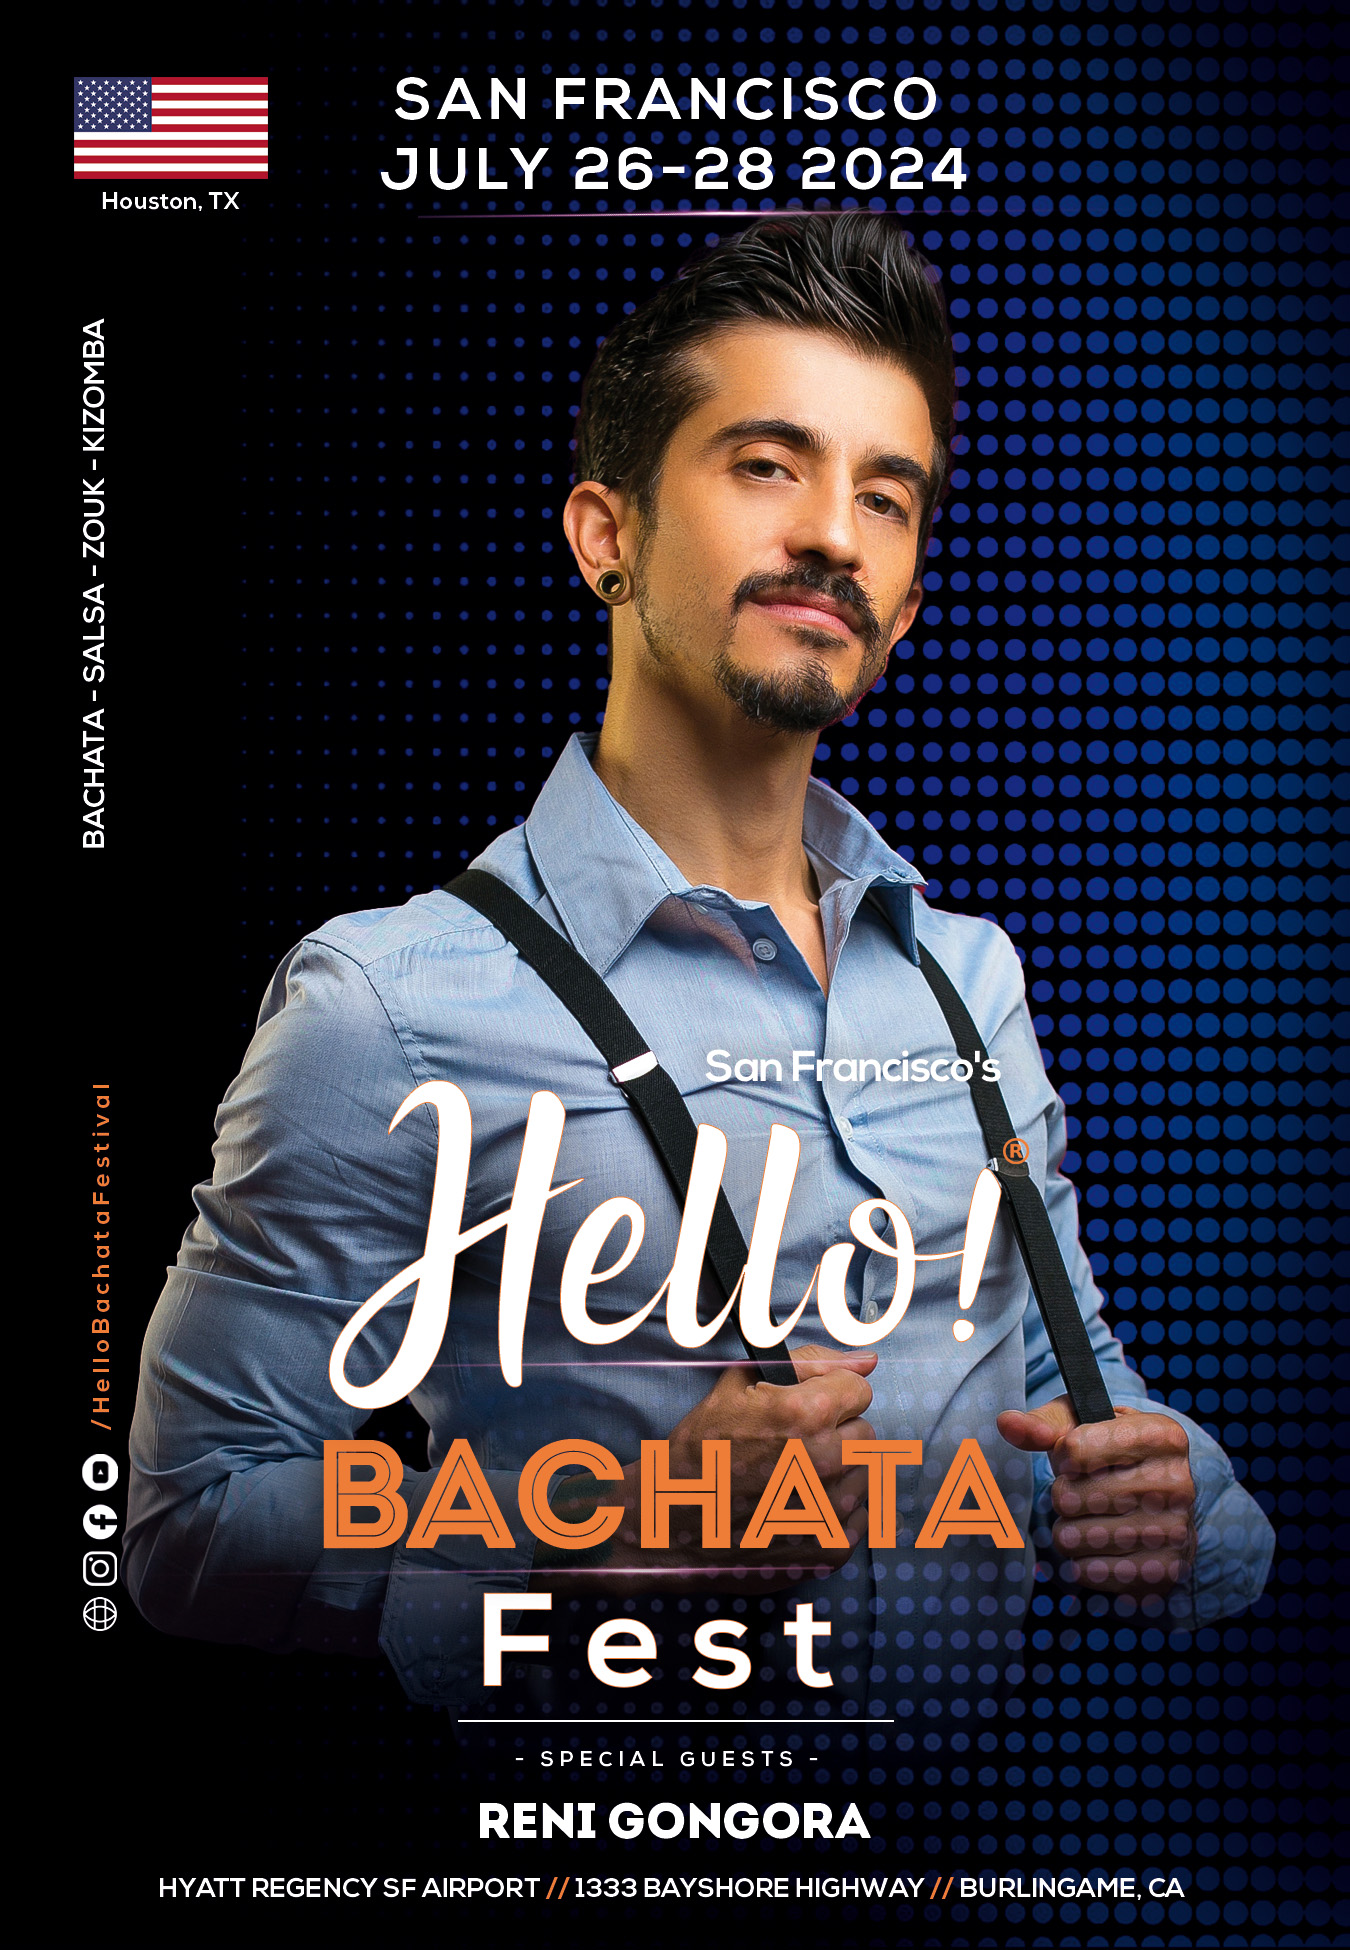 Hello Bachata Fest - DJ Reni G - Bachata - Houston, Albuquerque,, and Santa Fe